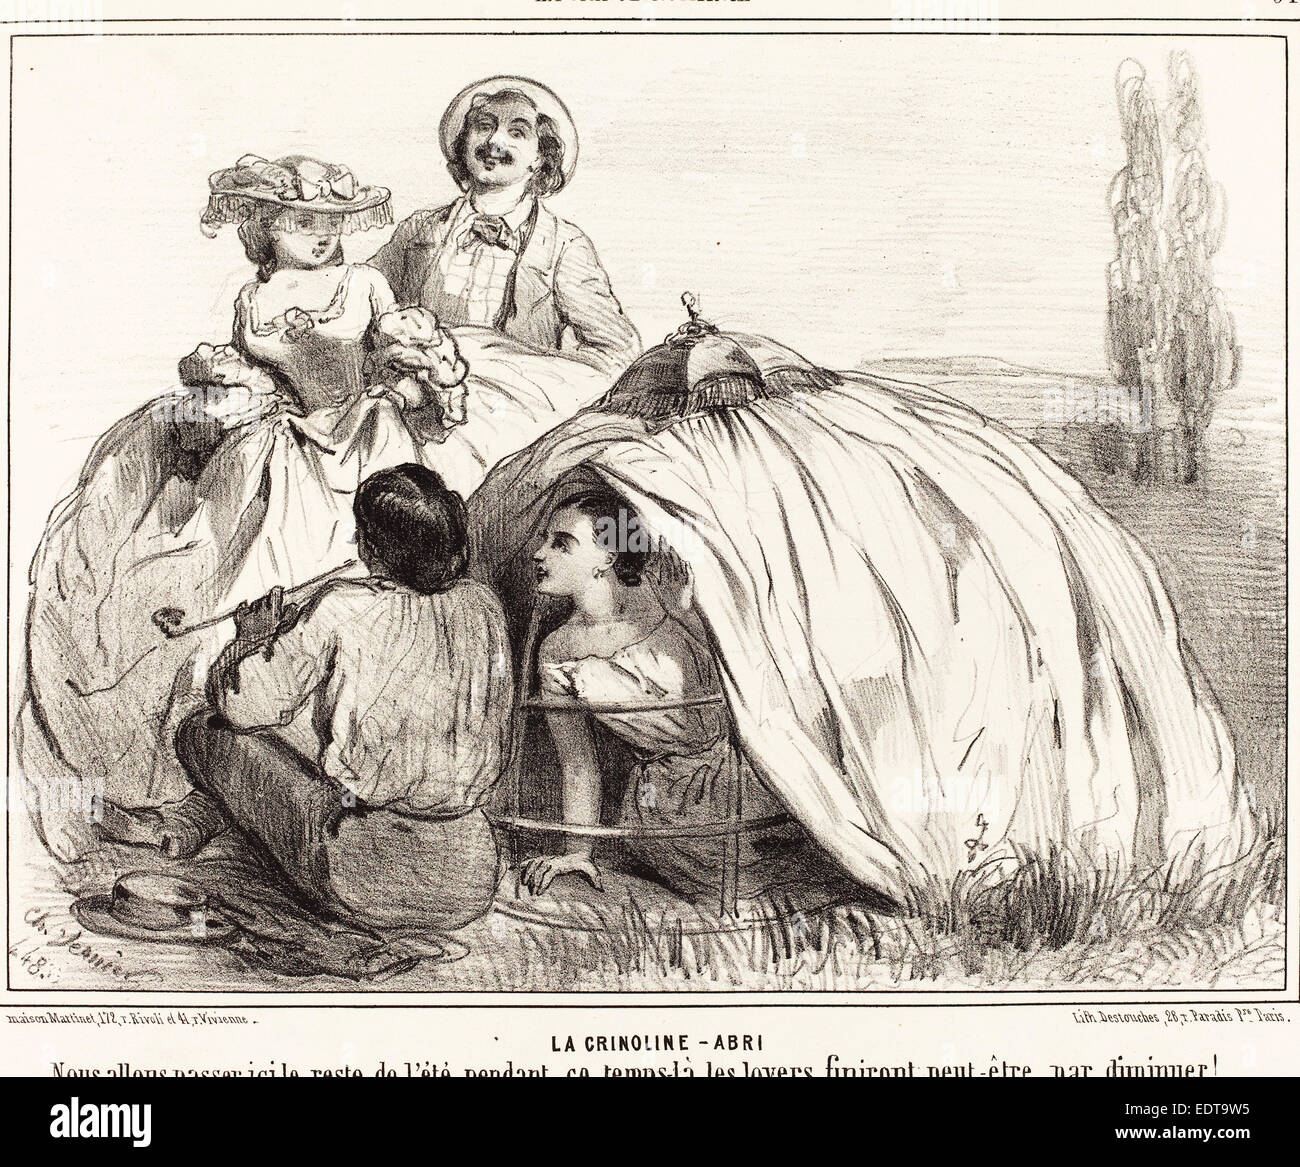 Charles Vernier (French, 1831 - 1887), La Crinoline-Abri, 1848, lithograph Stock Photo